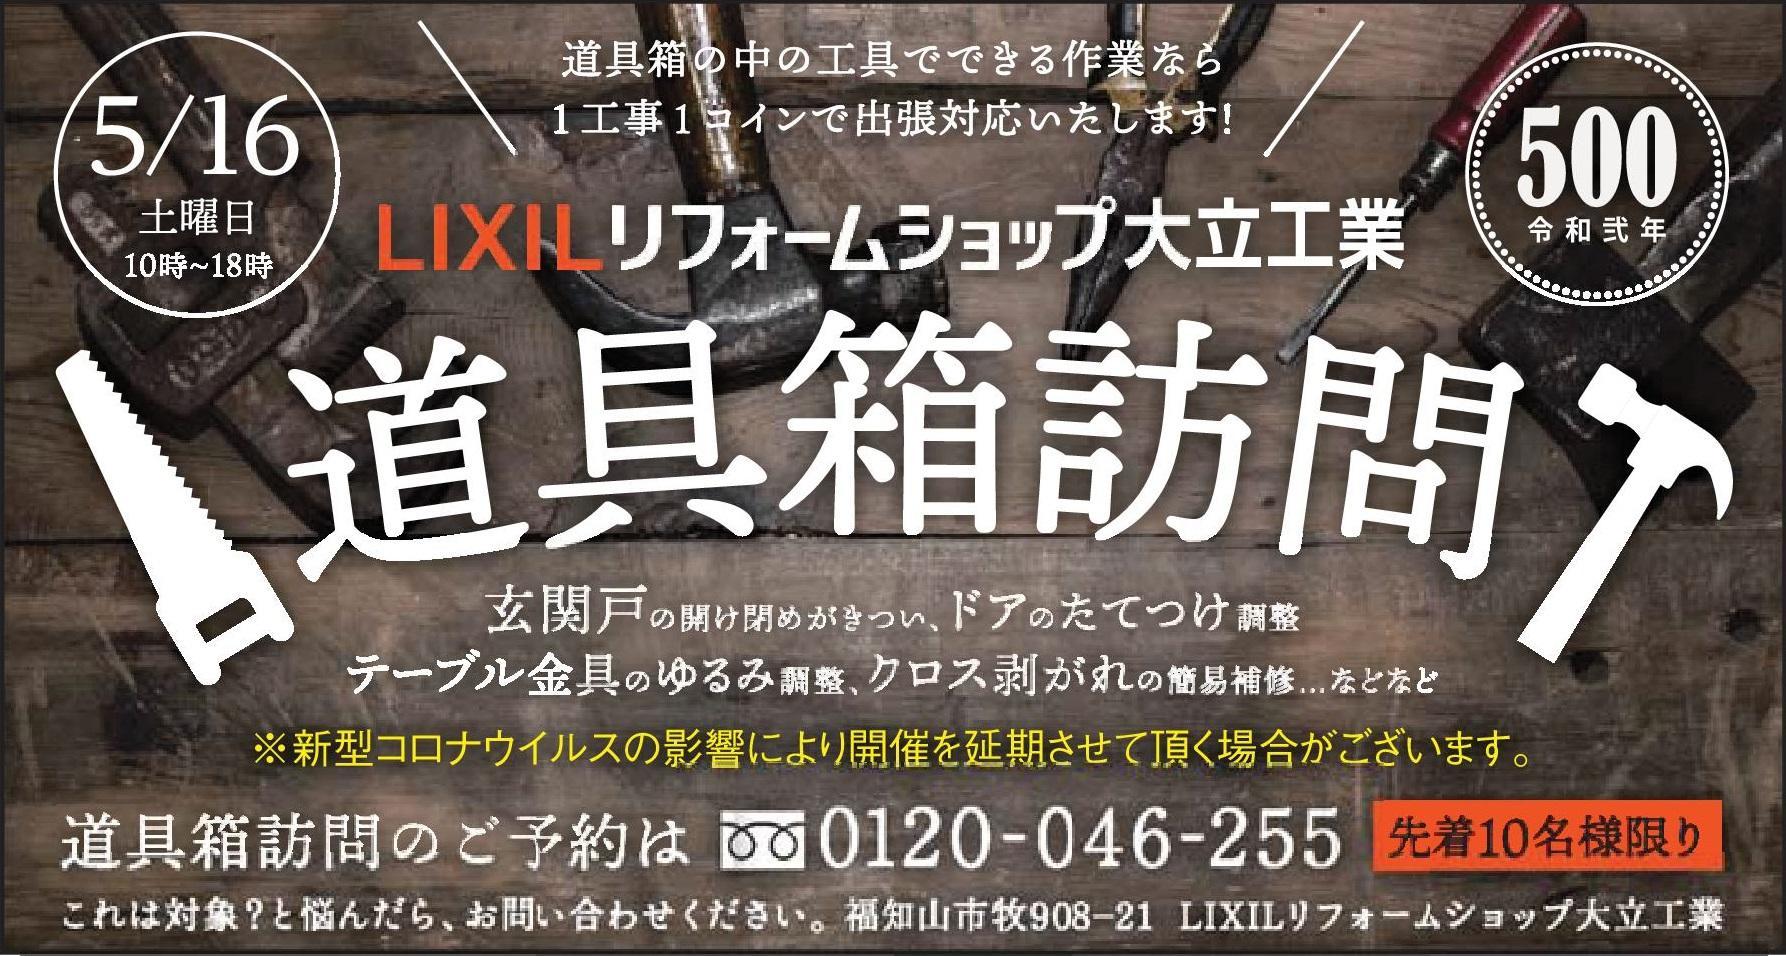 https://www.lixil-reformshop.jp/shop/SP00001006/photos/1ec47de134e1ba526956e082a0ec8bf5be31a7a0.jpg